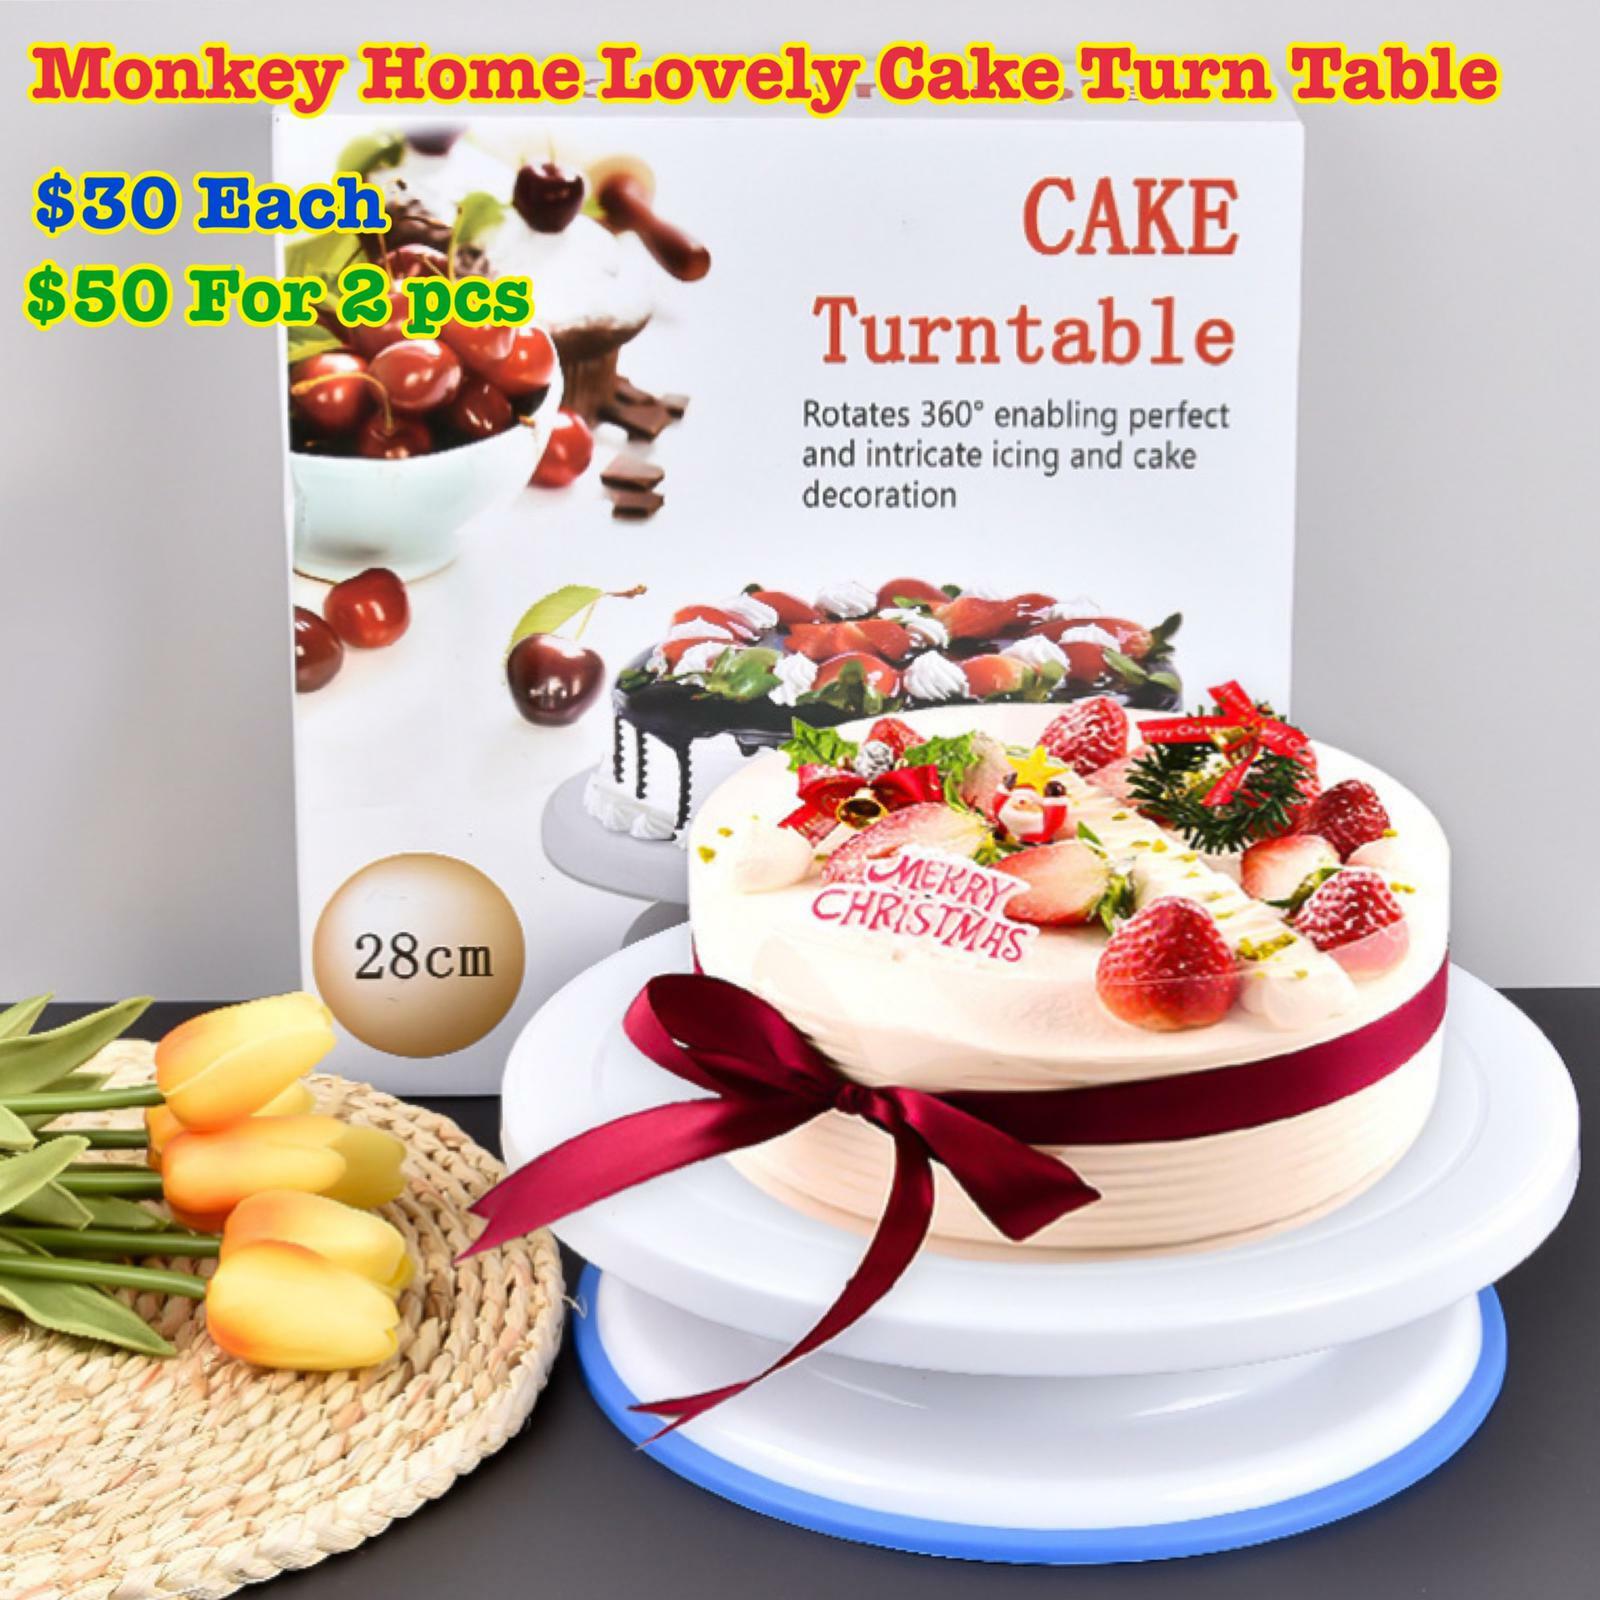 Monkey Home Lovely Cake Turn Table